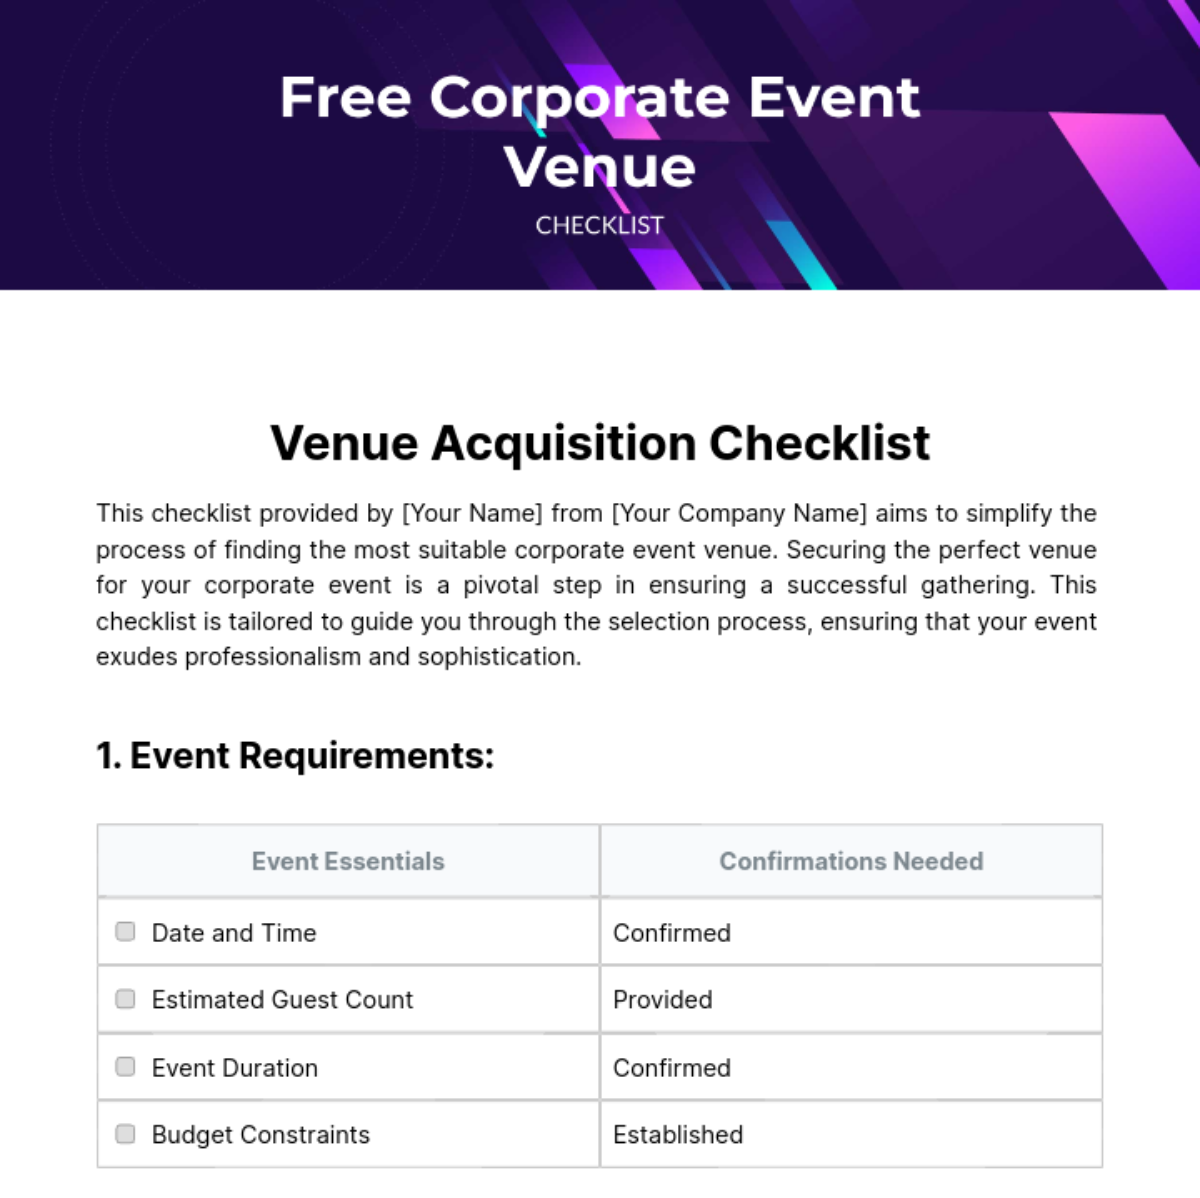 Free Corporate Event Venue Checklist Template